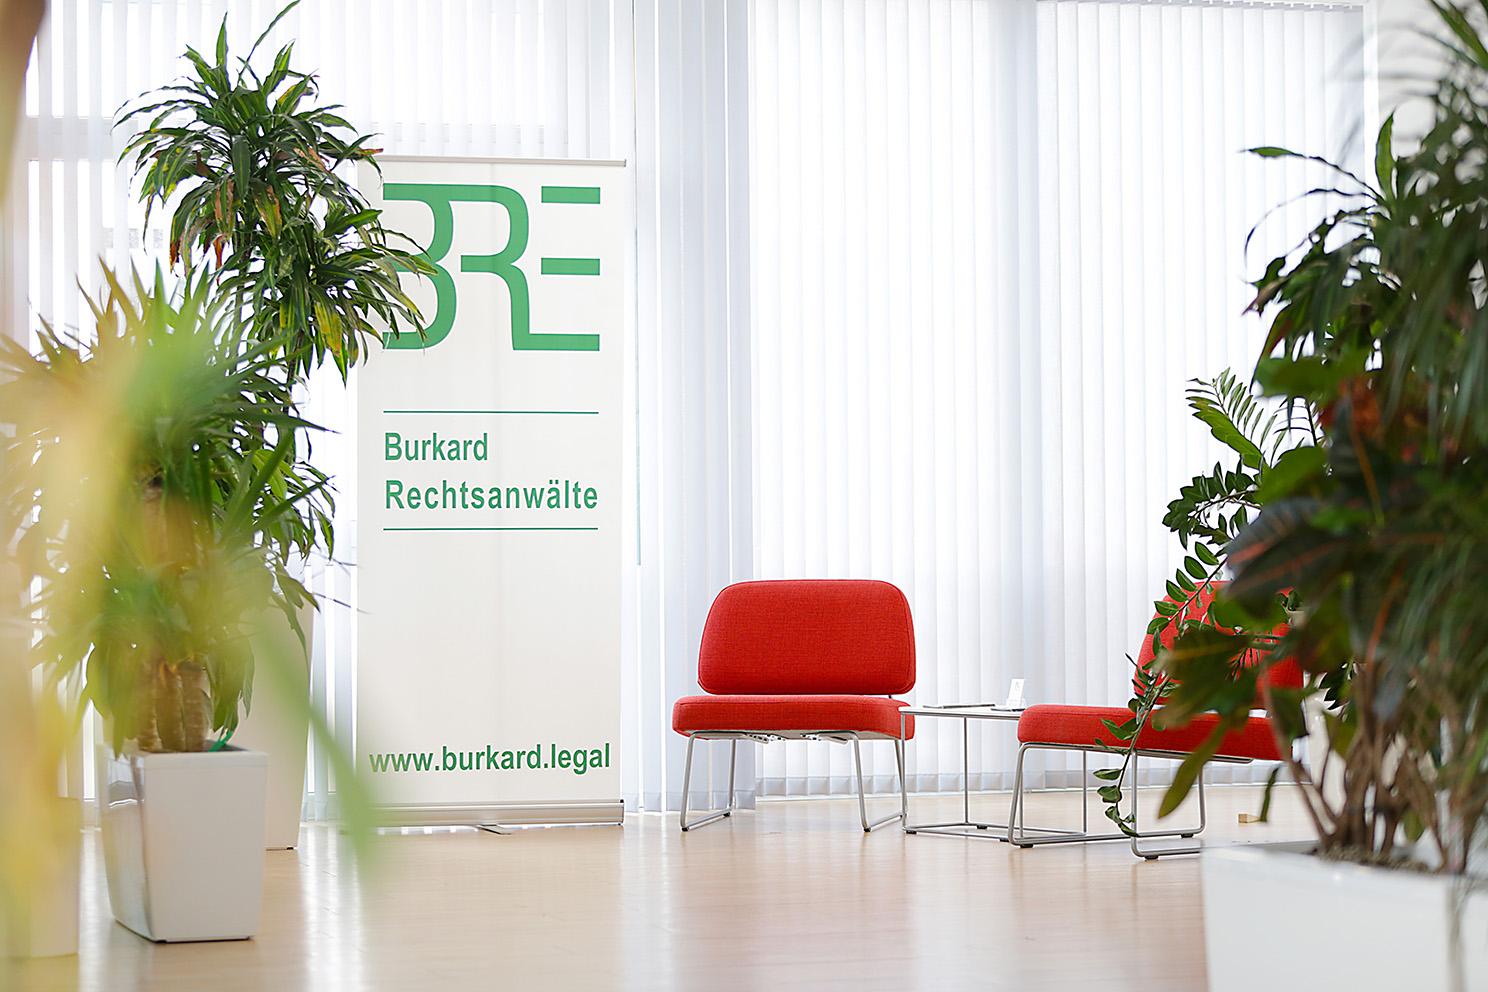 Bild 3 BRE Burkard Rechtsanwälte, Fachanwälte für Verkehrsrecht und Erbrecht in Meckenheim